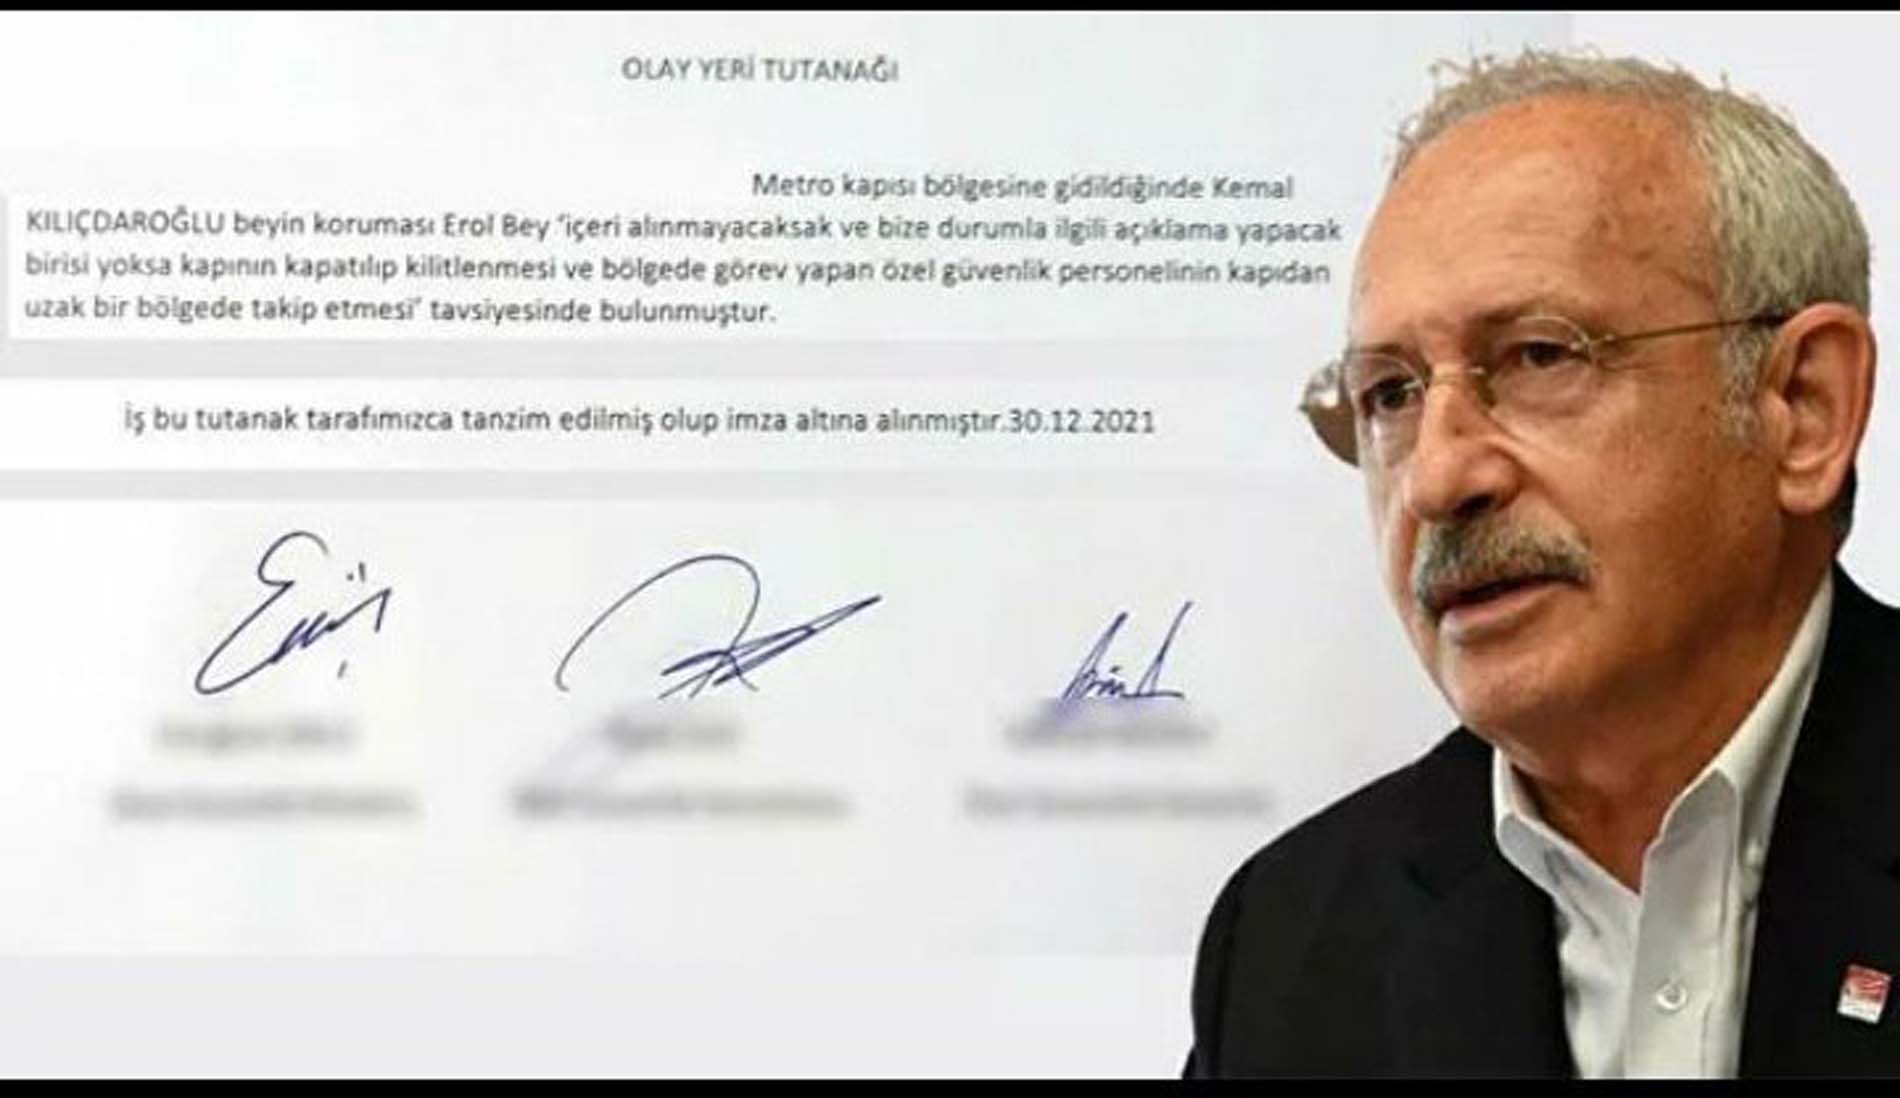 Abdulkadir Selvi, Kılıçdaroğlu'nun belge isteğini geri çevirmeyerek, MEB kapısına kilit vuran ismi kanıtlarıyla birlikte ortaya çıkardı!